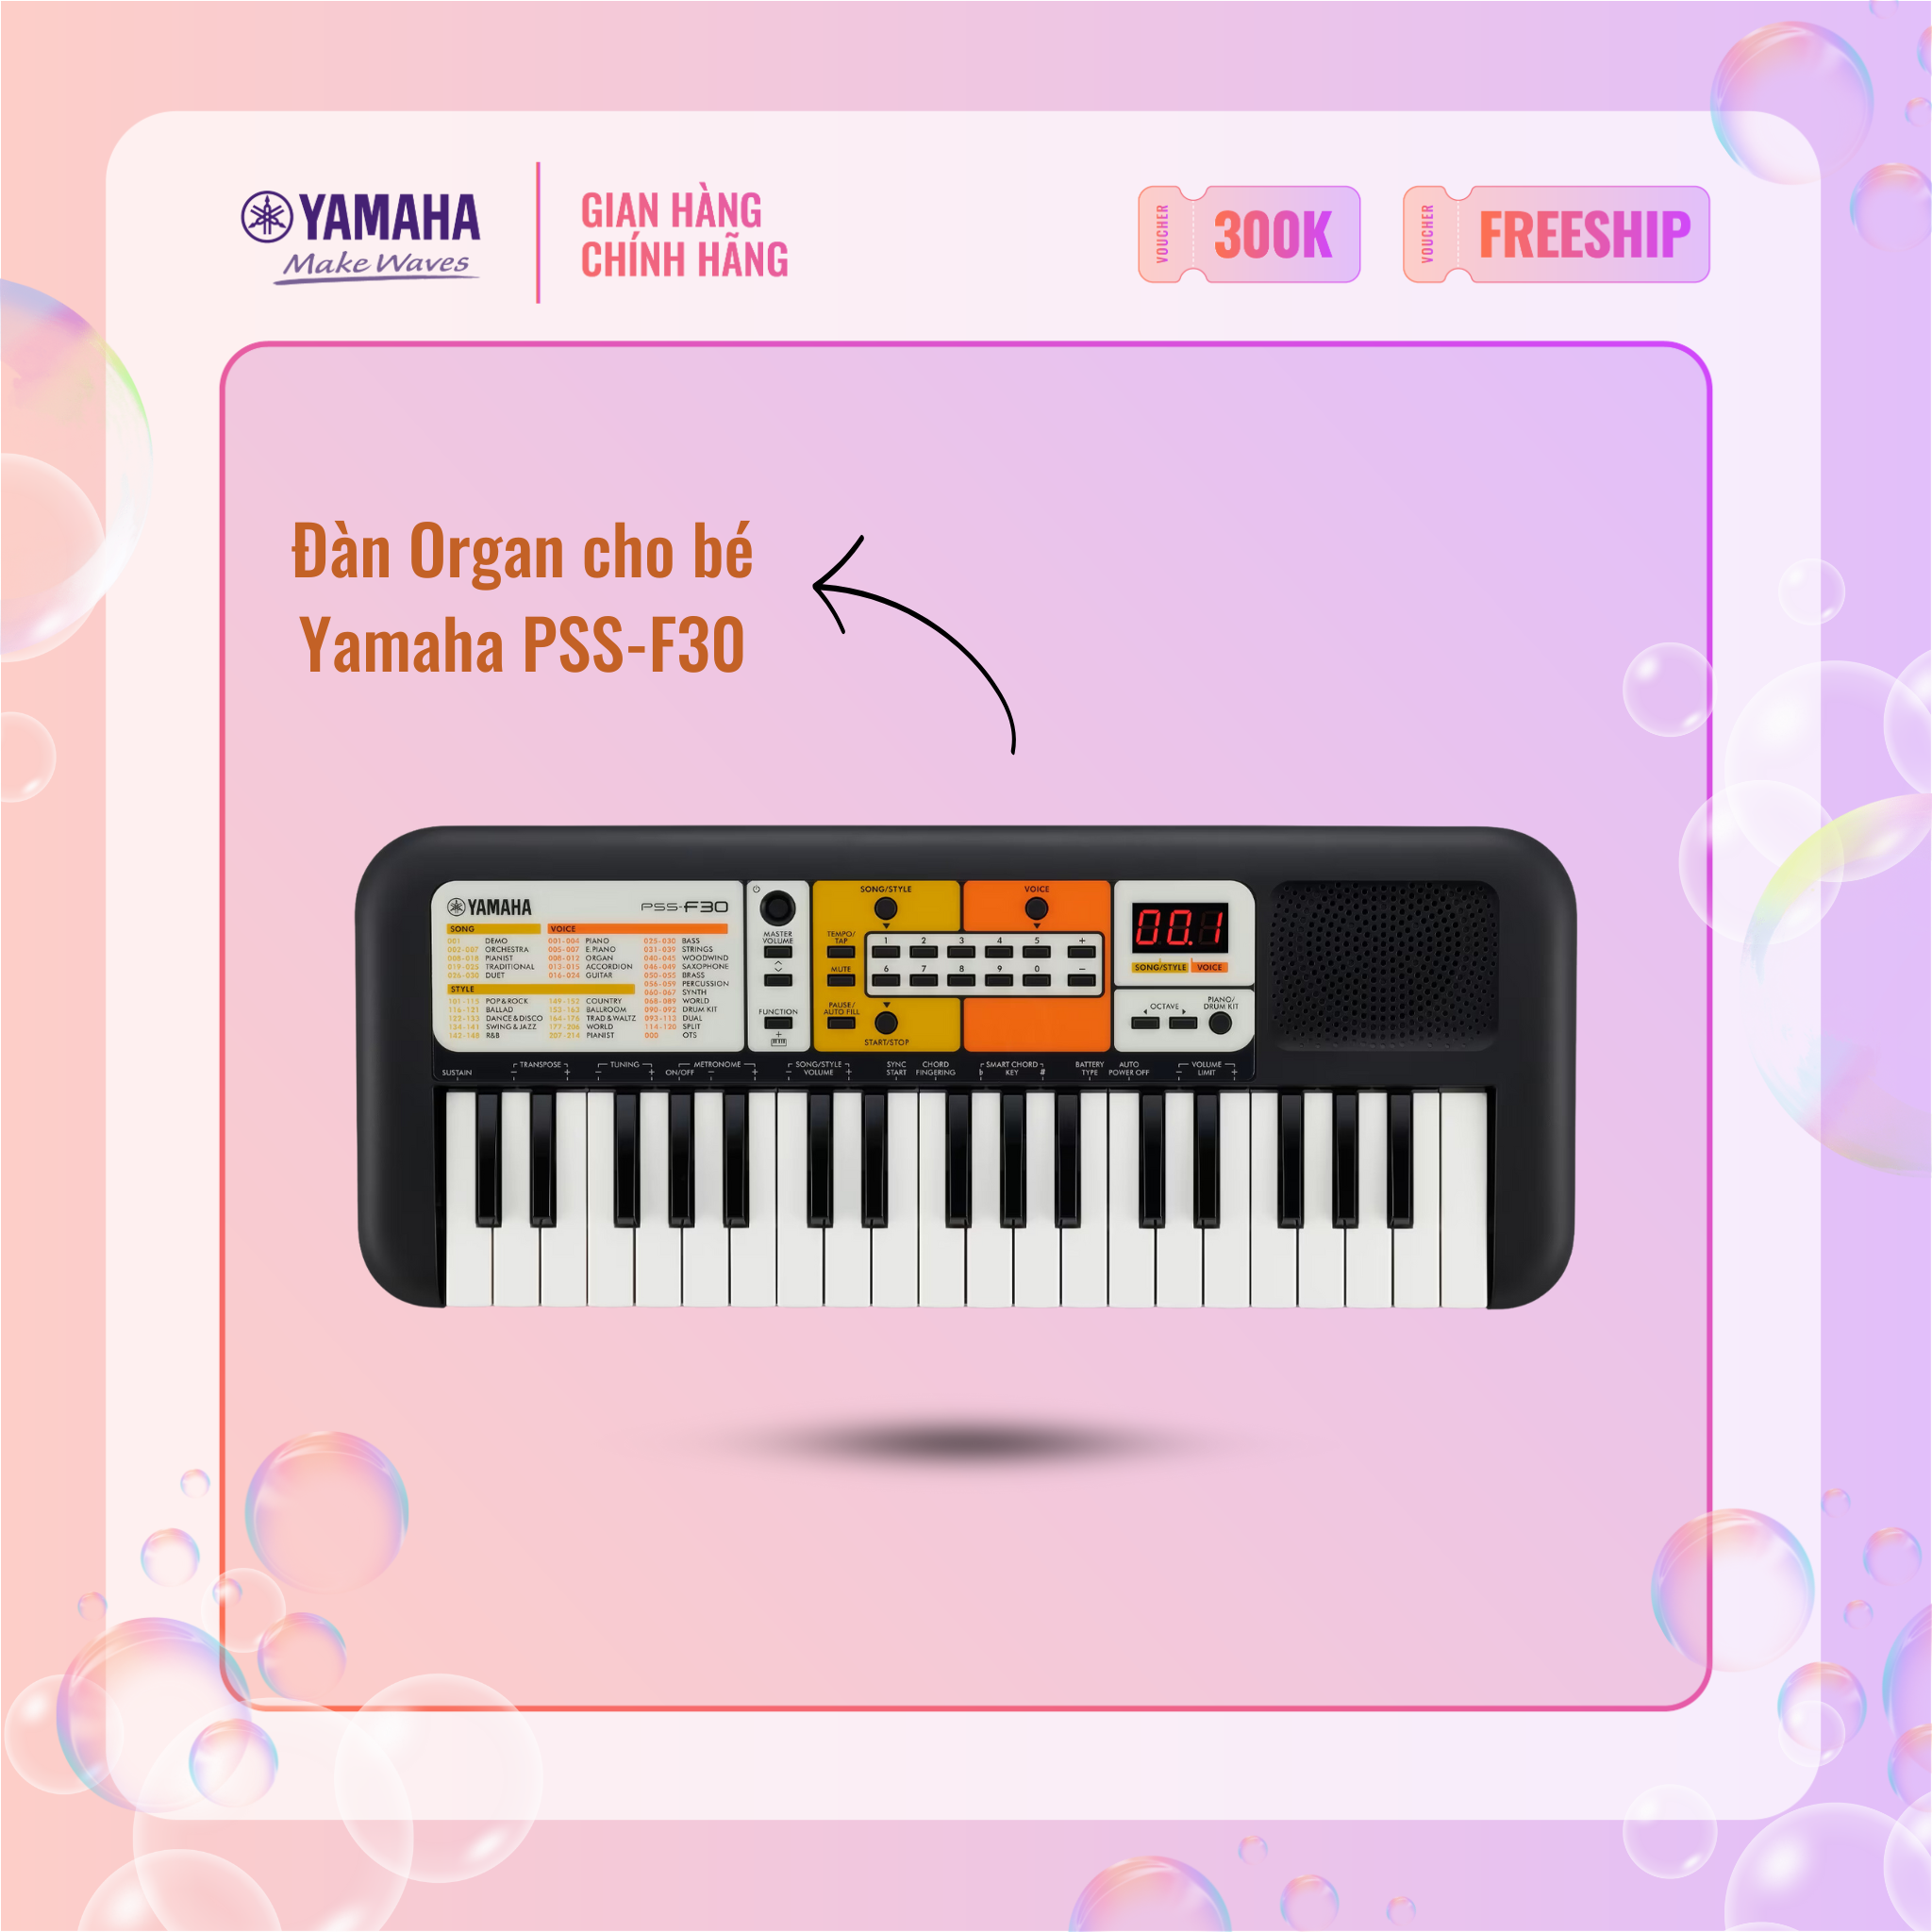 Đàn Organ điện tử (Keyboard) YAMAHA cho bé PSS-F30 với hơn 100 tiếng nhạc và nhạc đệm phù hợp cho trẻ em trên 6 tuổi - Bảo hành chính hãng 12 tháng